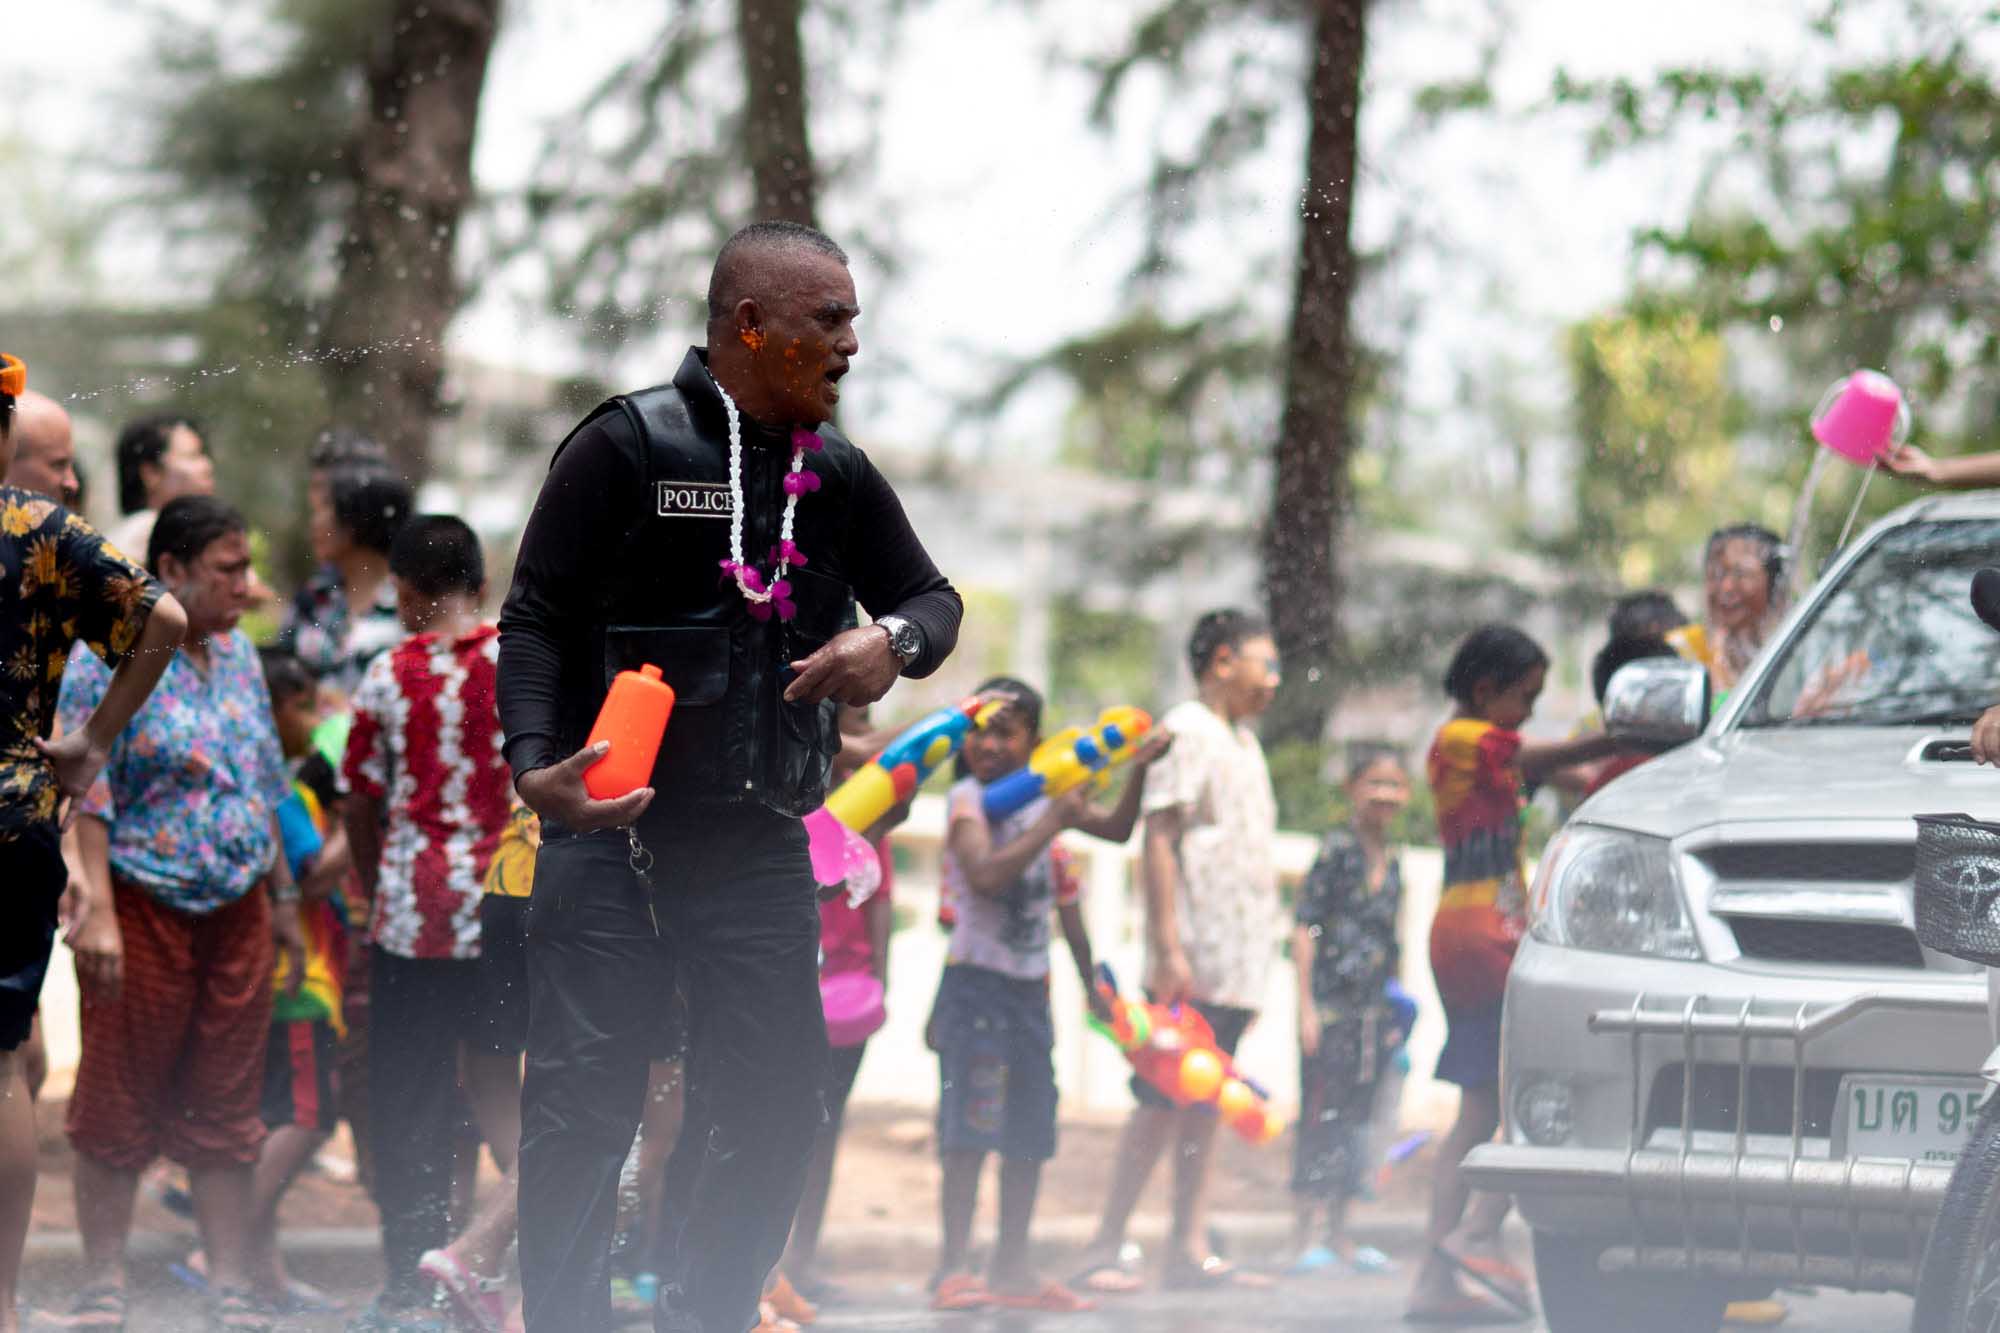 Police officer celebrates Songkran water festival in Phuket, Thailand